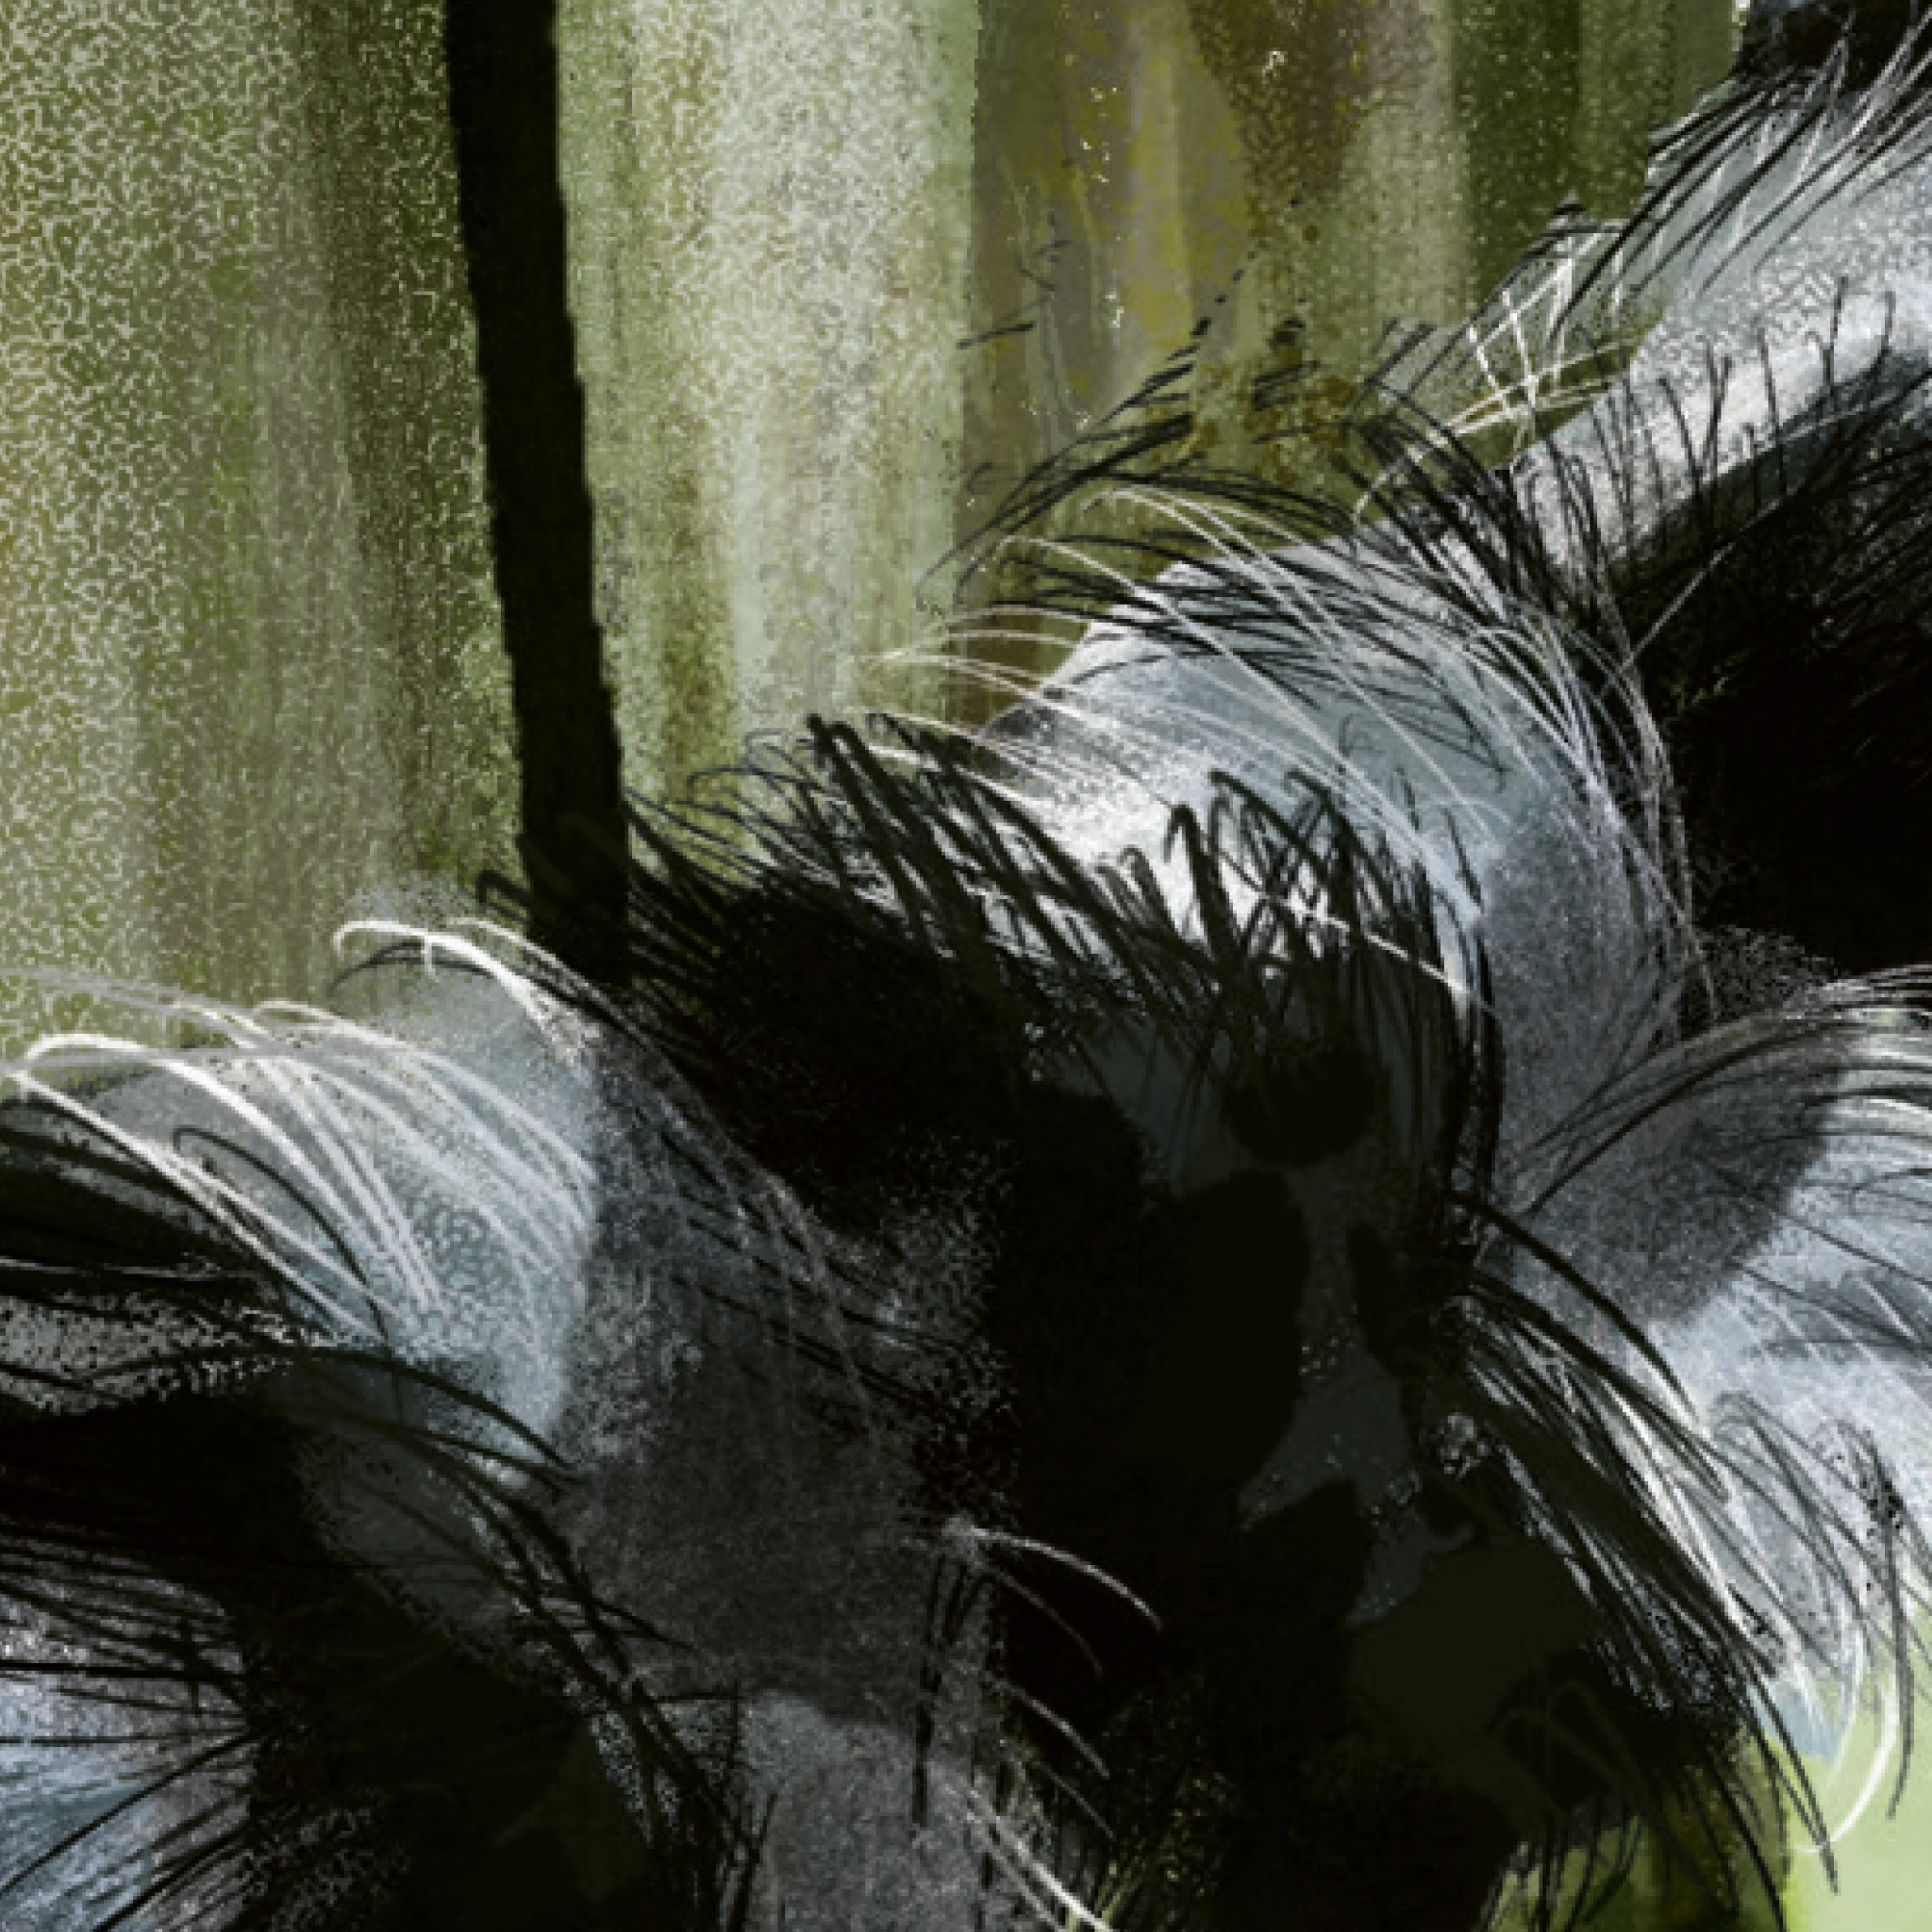 Gros plan sur l'illustration du pelage de la queue annelée avec des couleurs intercalées en anneaux noirs et blancs d'un lémurien.